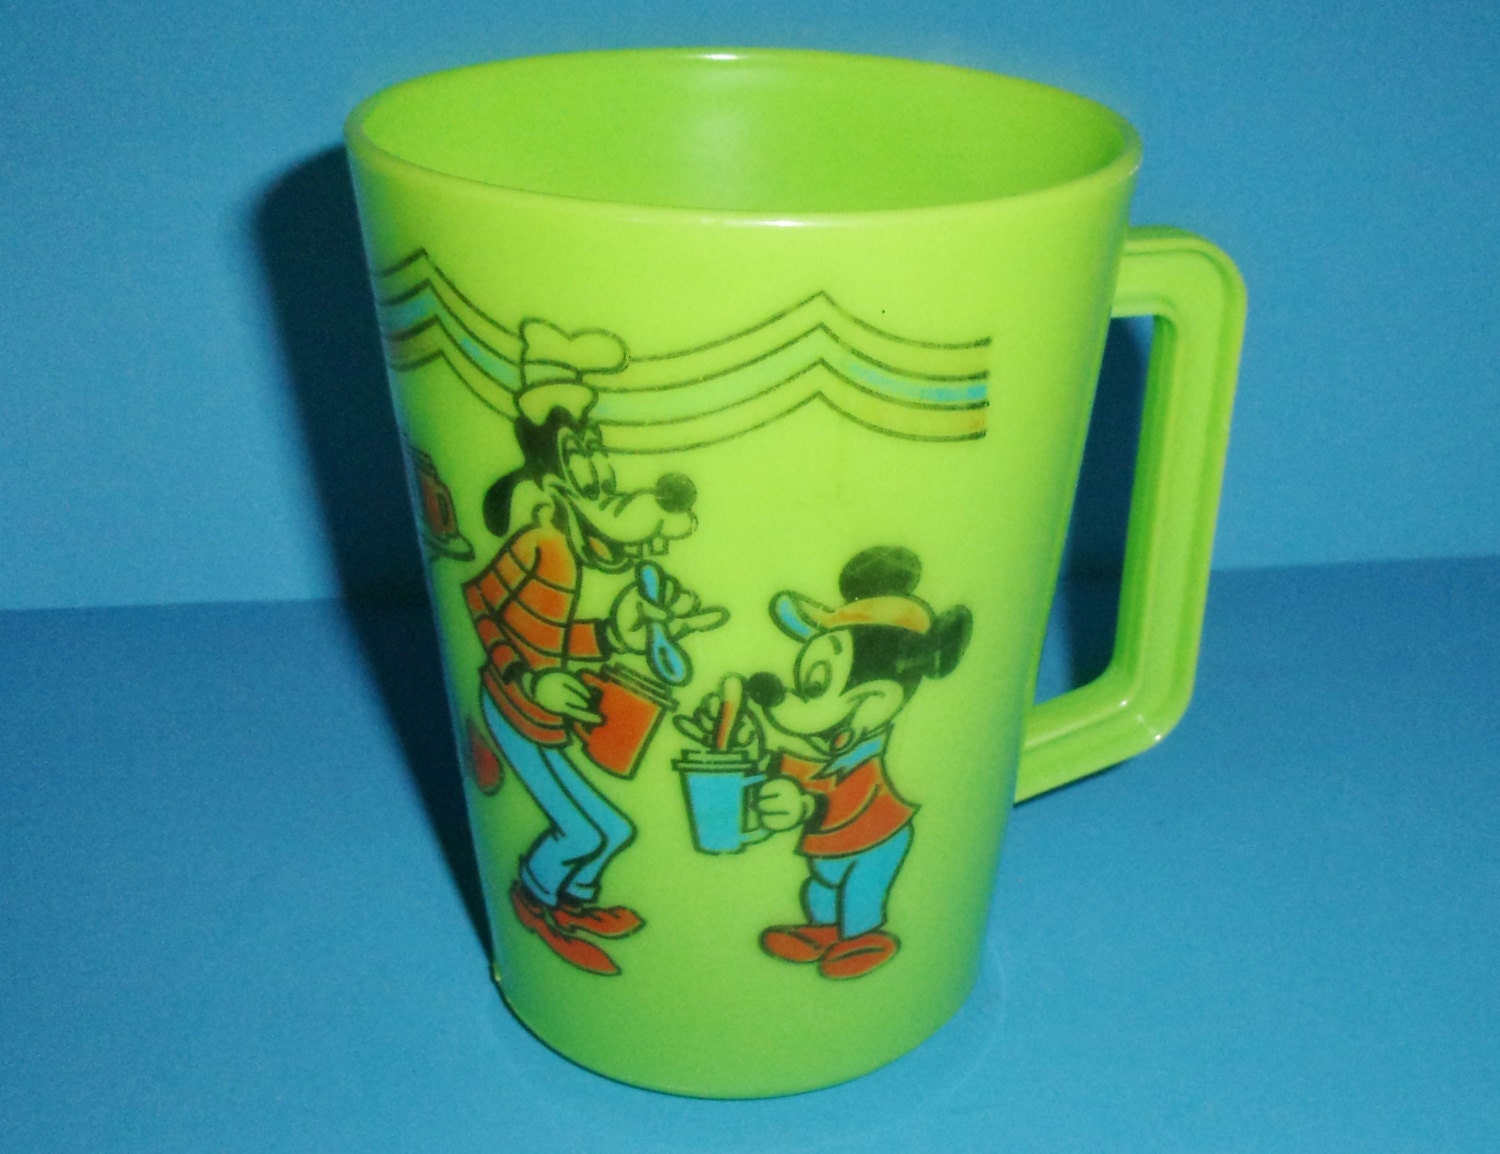 Vintage Disney Large Cup Mug Plastic For Slush Or Frozen